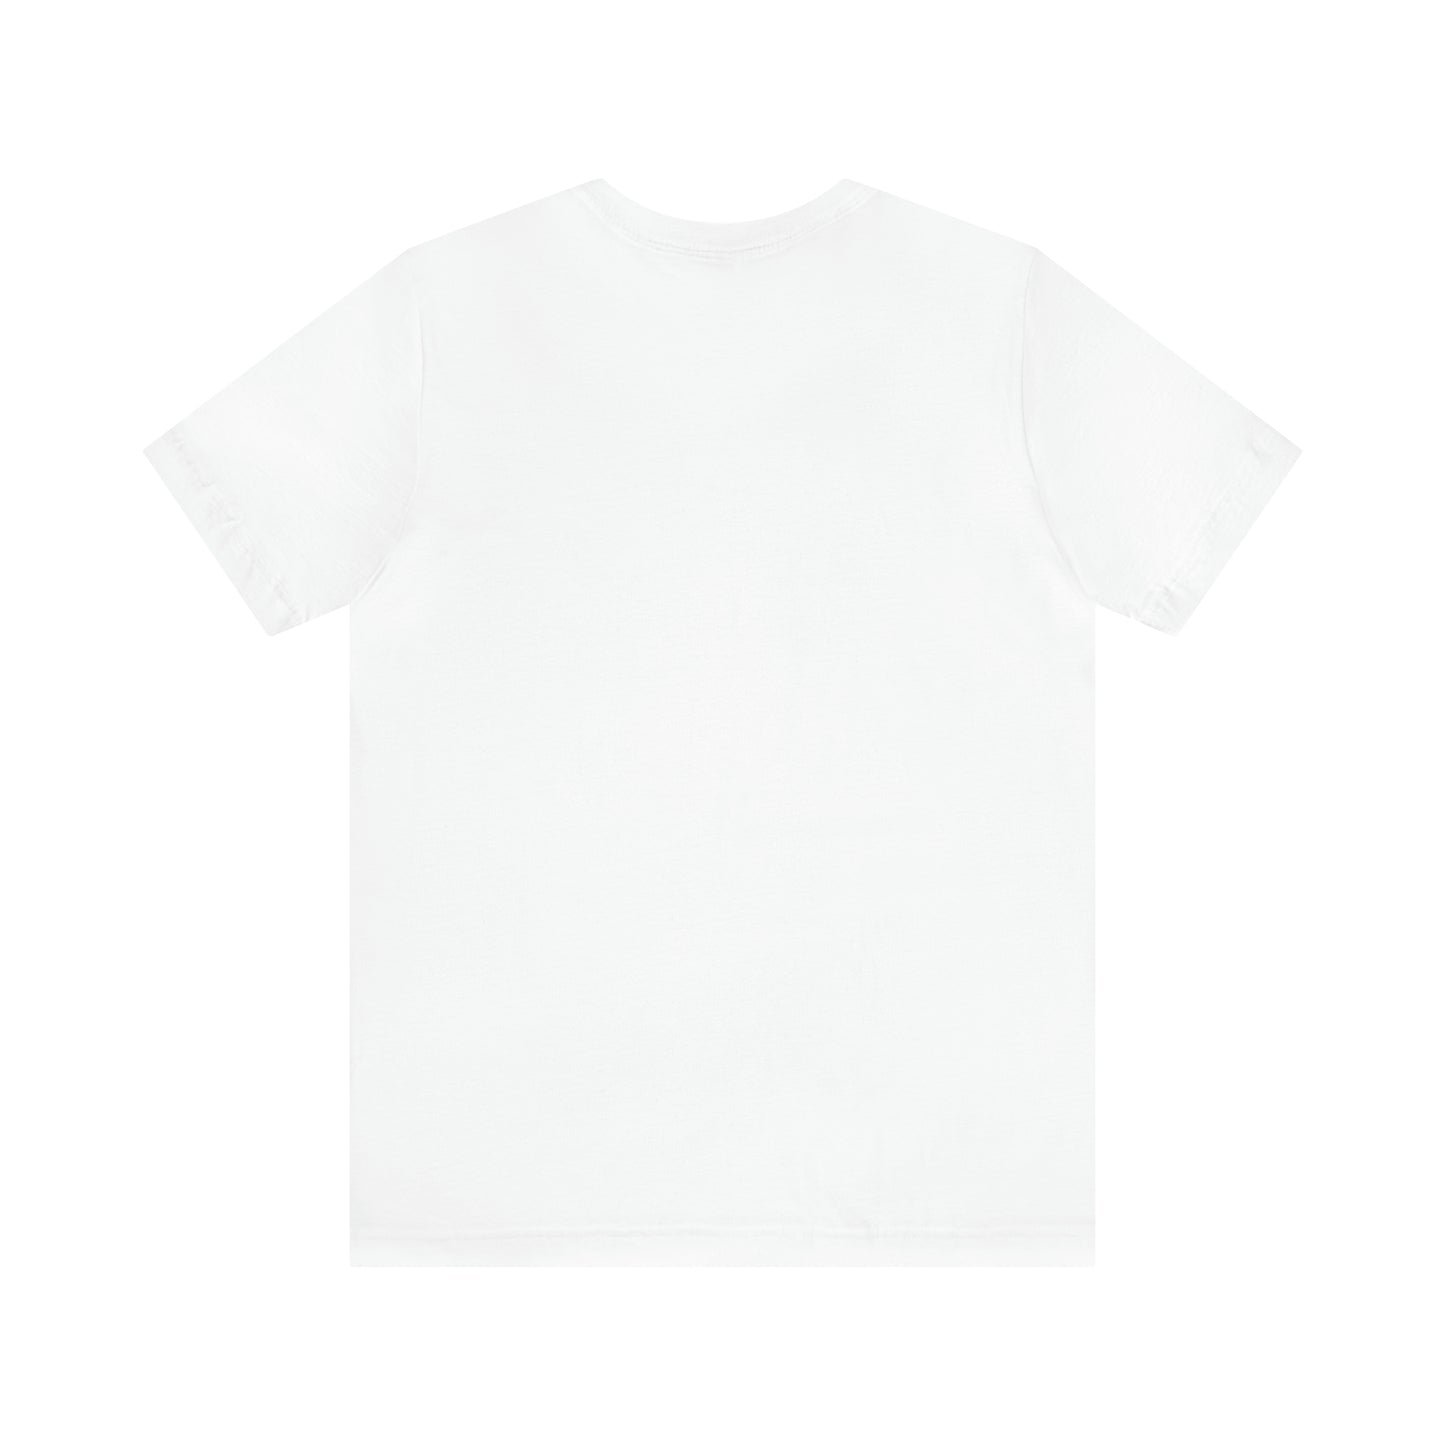 Jersey Short,T-shirt for women, Modern women, Design to life,Fun T-shirt,Perfect for summer